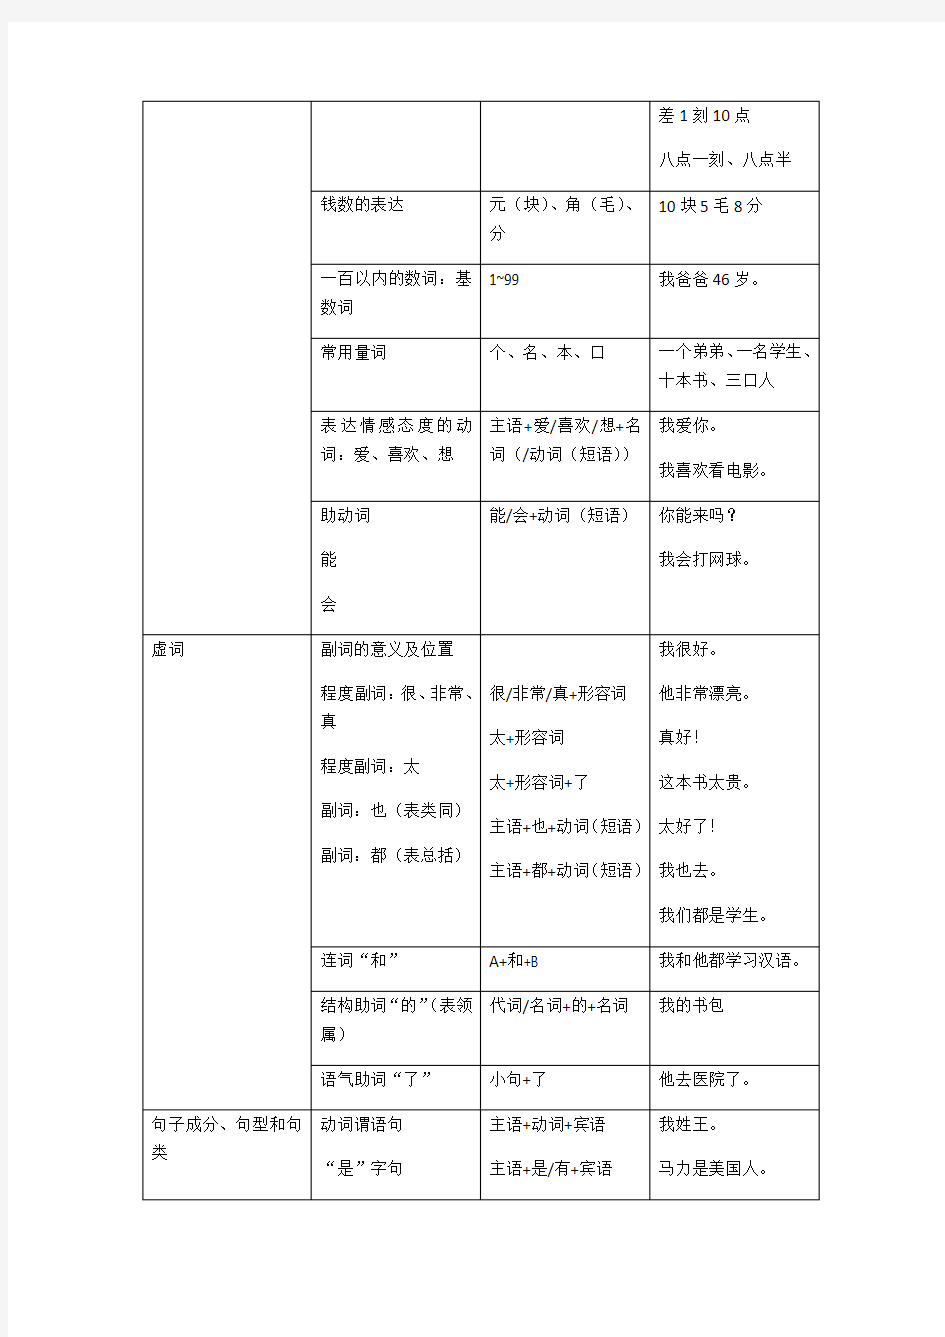 常用汉语语法分级表(修订版)